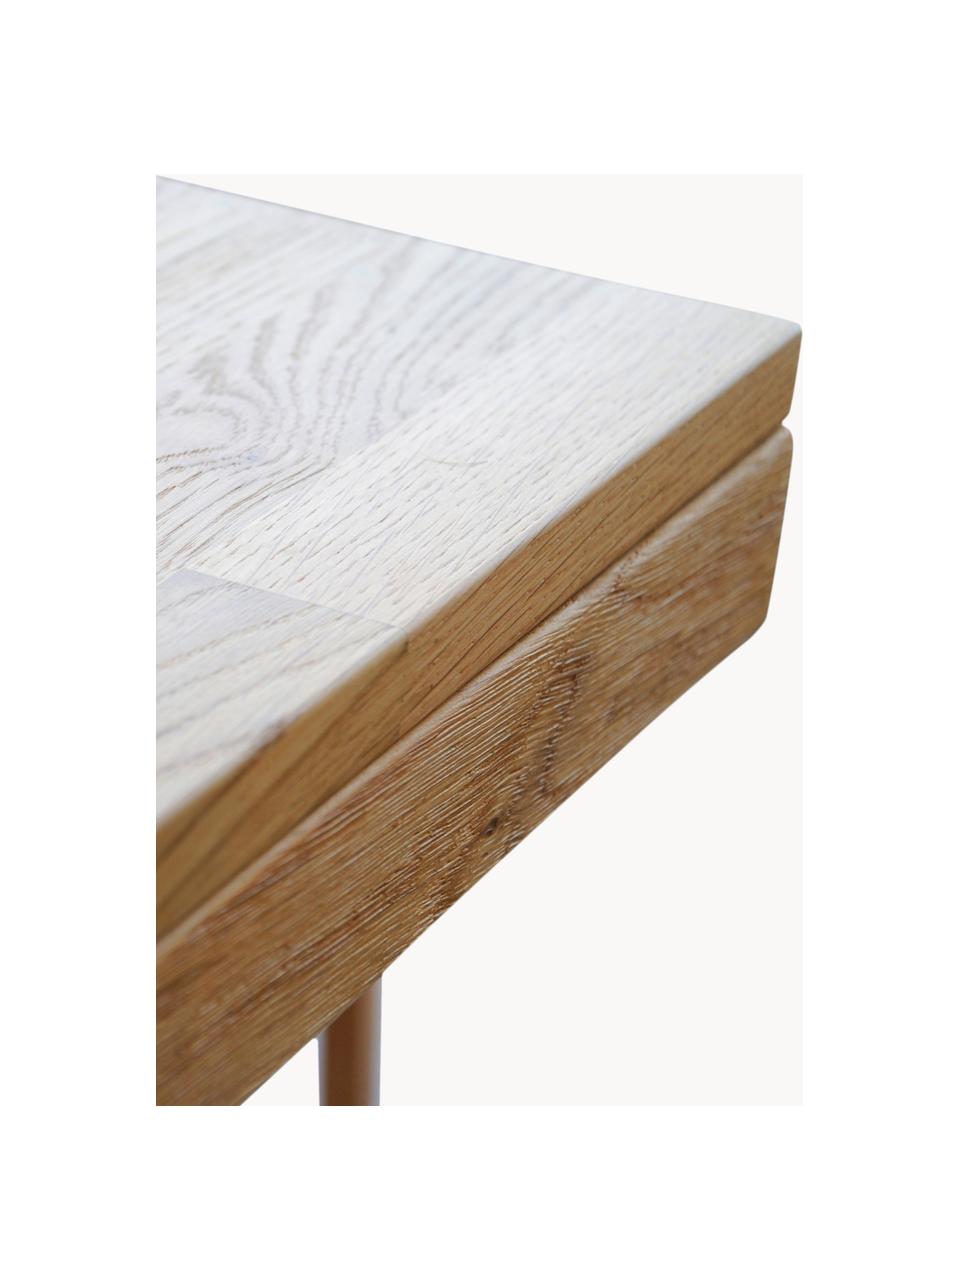 Verlängerbarer Esstisch Brooklyn aus Eichenholz, in verschiedenen Größen, Massives Eichenholz, gebürstet und klar lackiert

Dieses Produkt wird aus nachhaltig gewonnenem, FSC®-zertifiziertem Holz gefertigt., Eichenholz, B 170/220 x T 95 cm